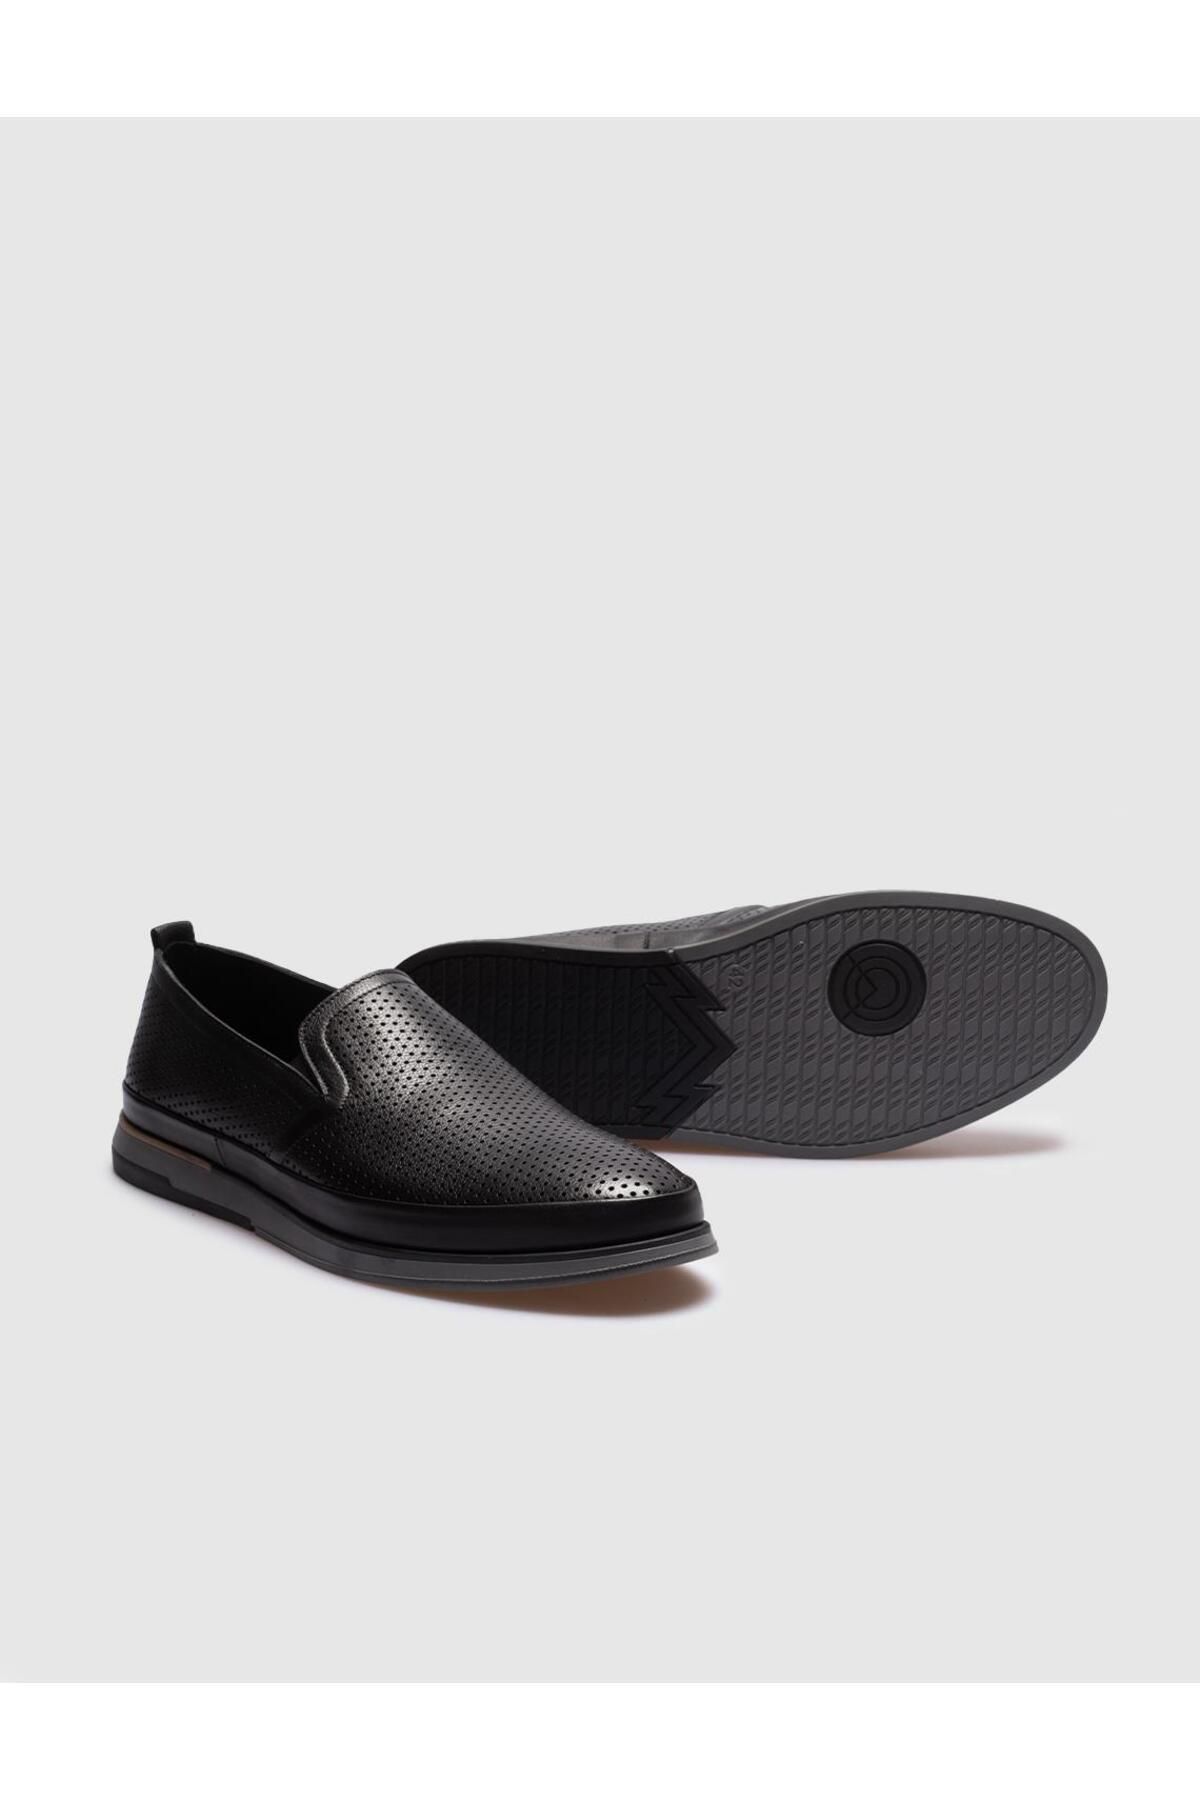 Cabani کفش روزانه مردانه چرمی سیاه